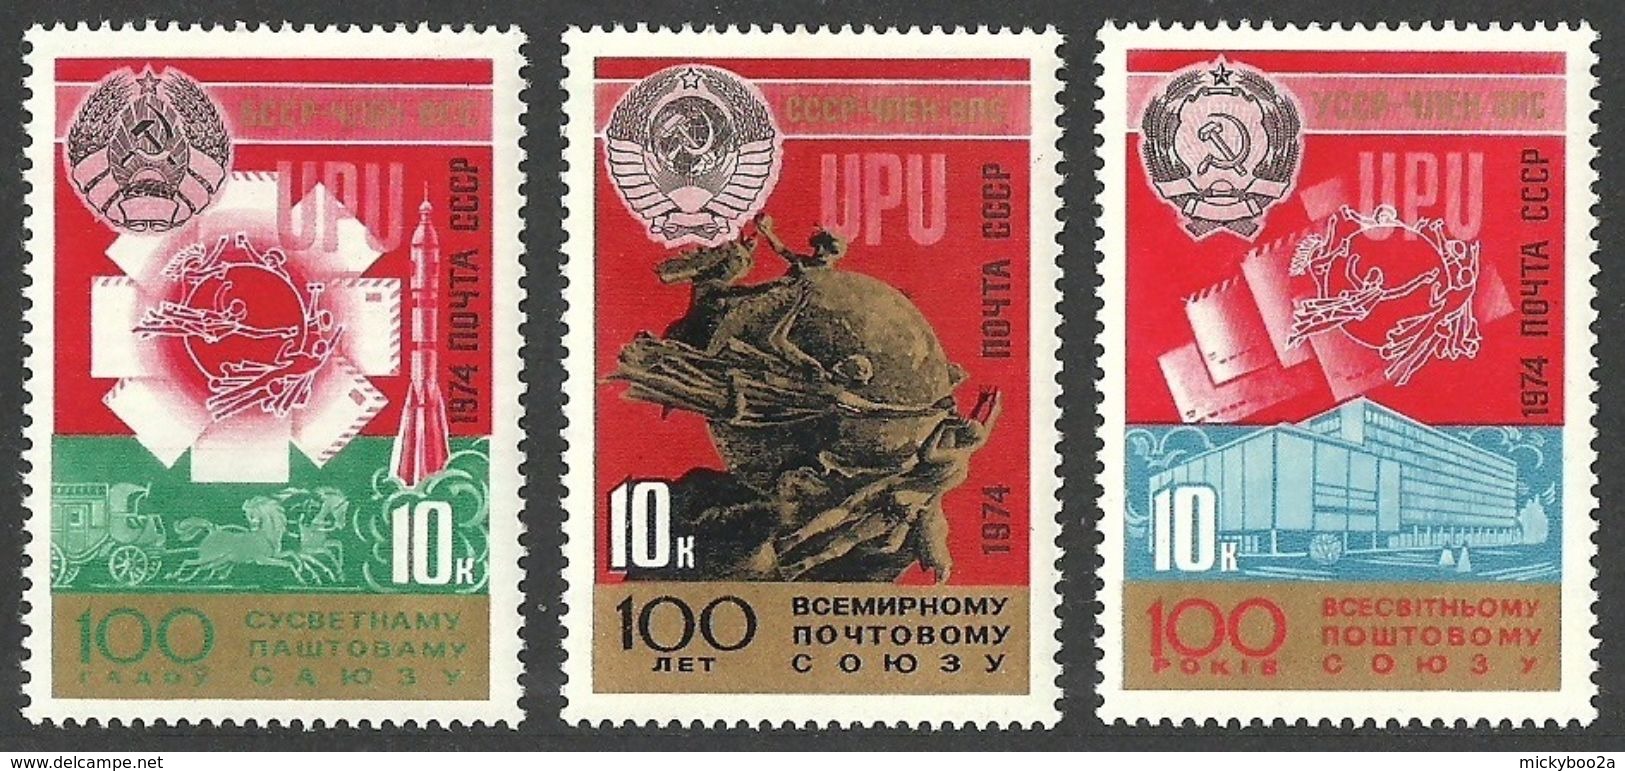 RUSSIA 1974 UPU OMNIBUS SET MNH - Unused Stamps